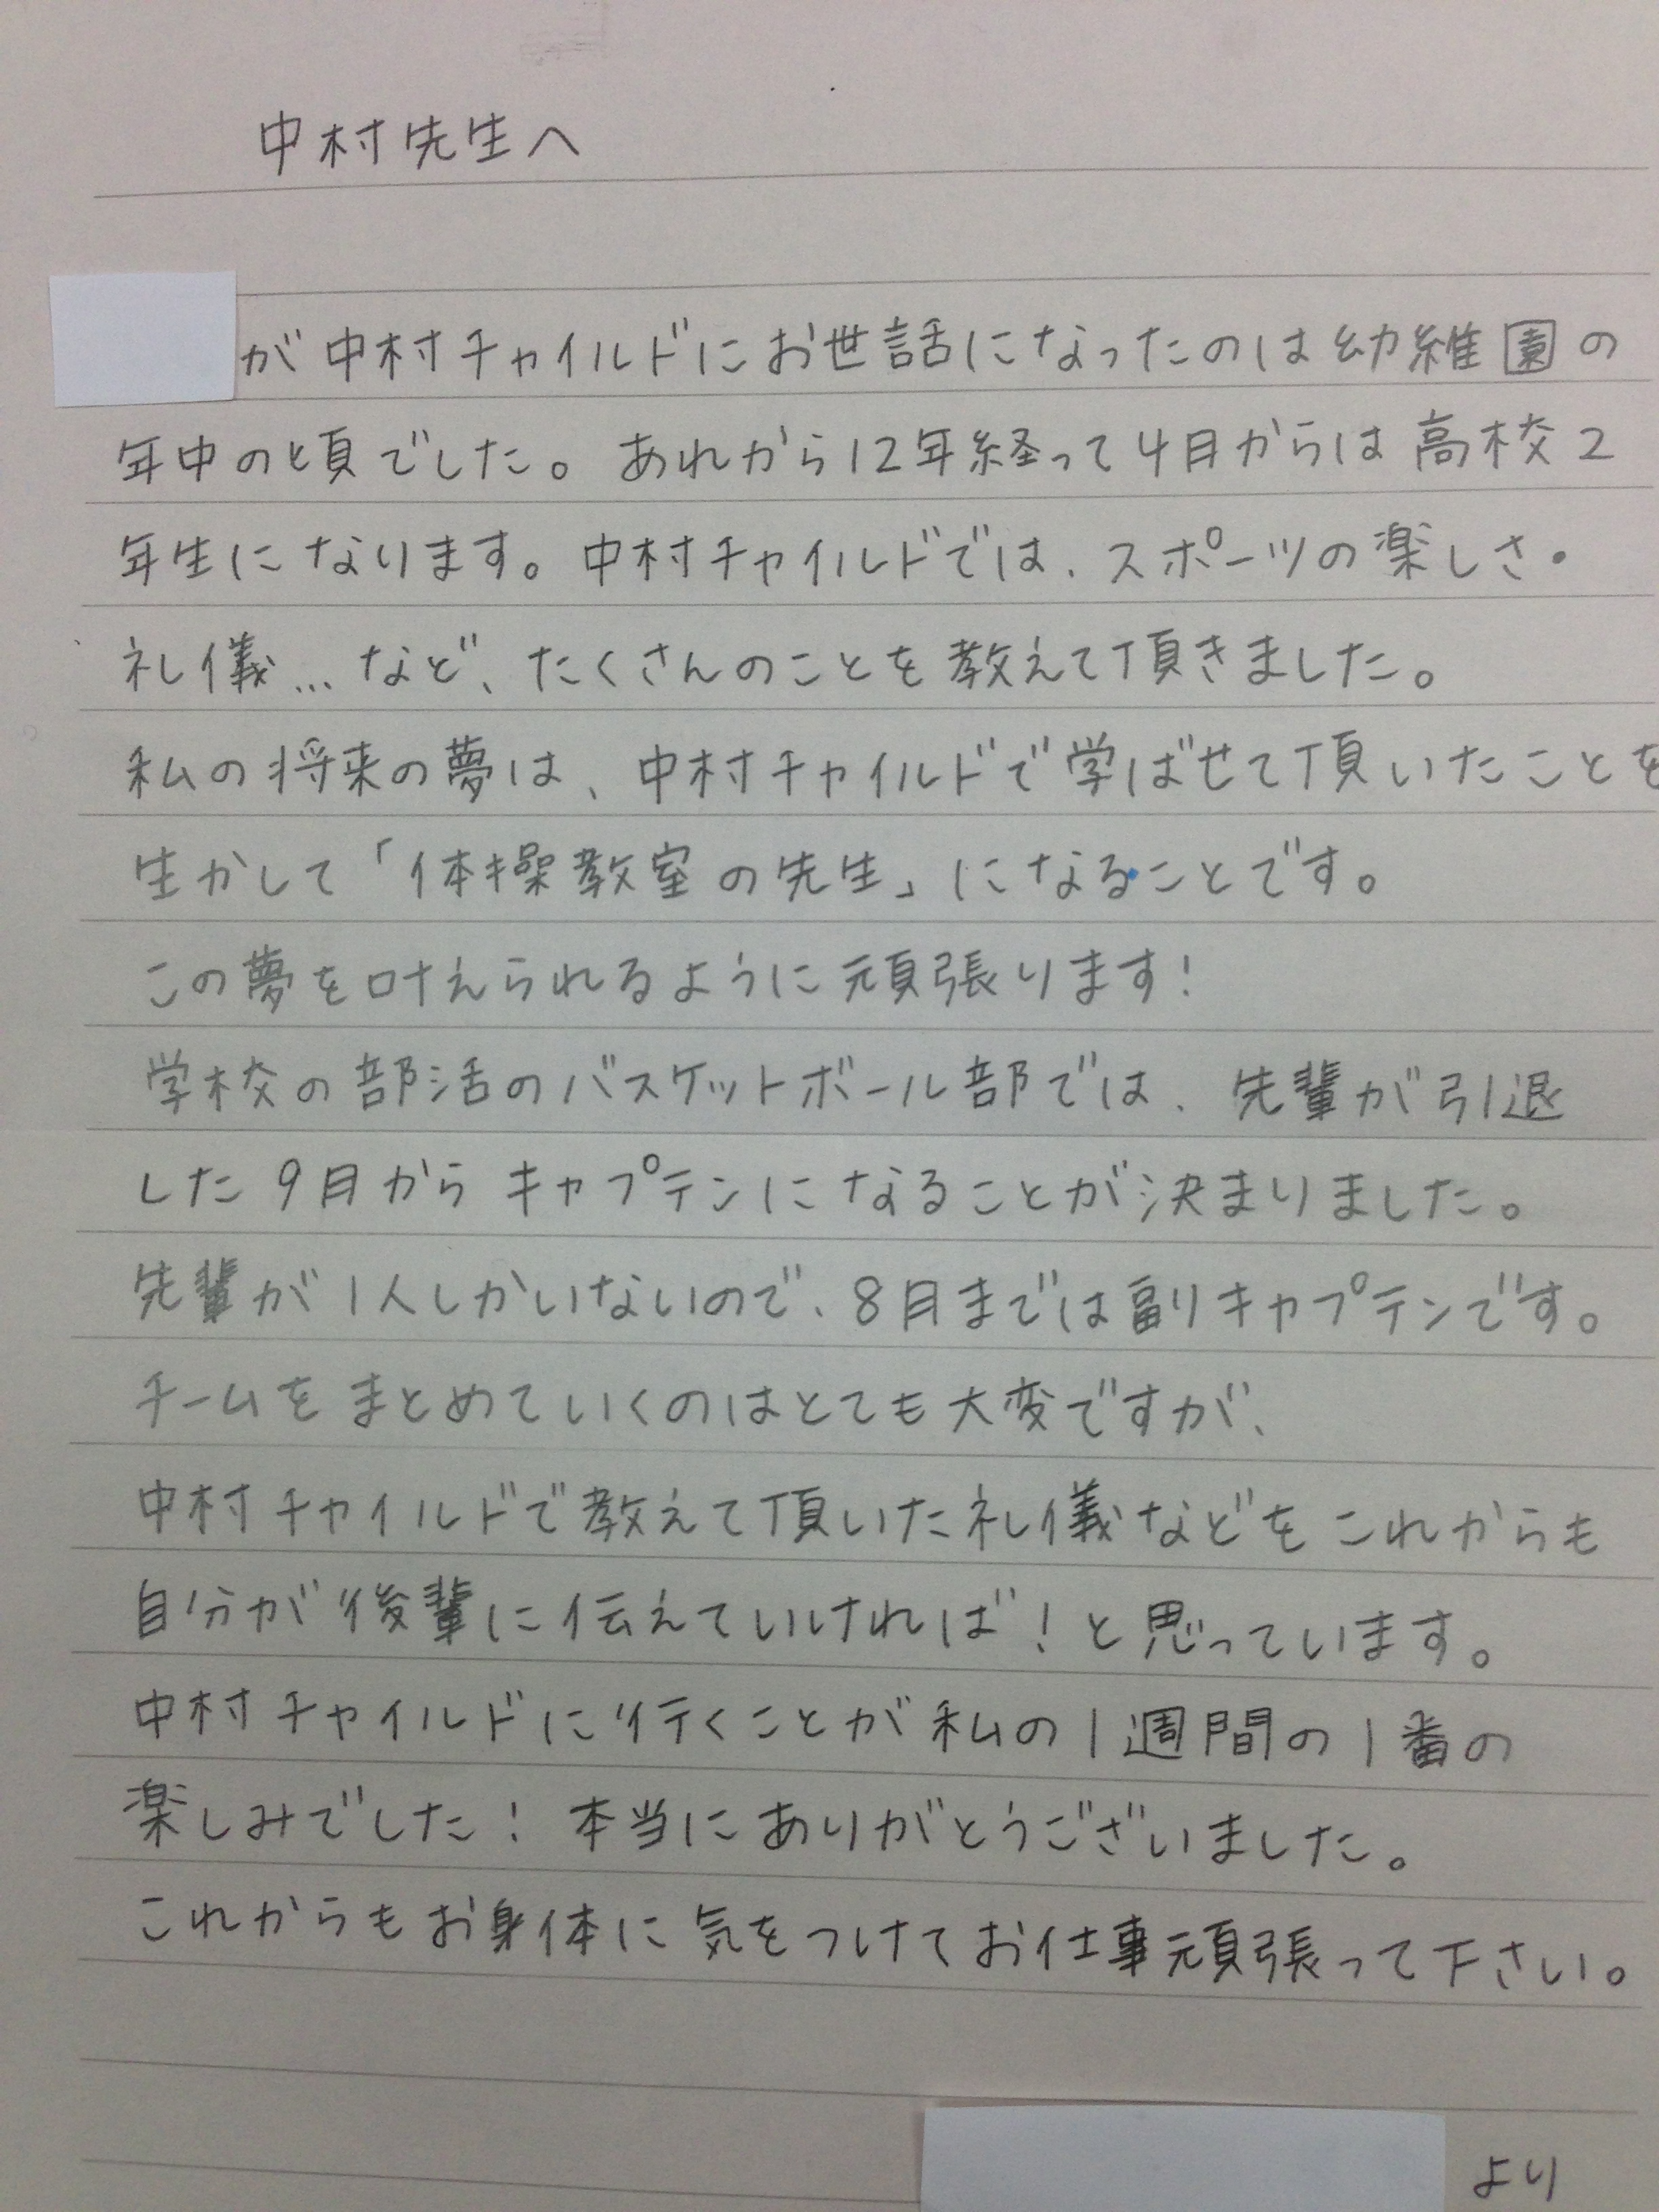 うれしい手紙が届きました 大阪市 上本町 体操教室 ナカムラチャイルドスポーツ Ncs エヌシーエス